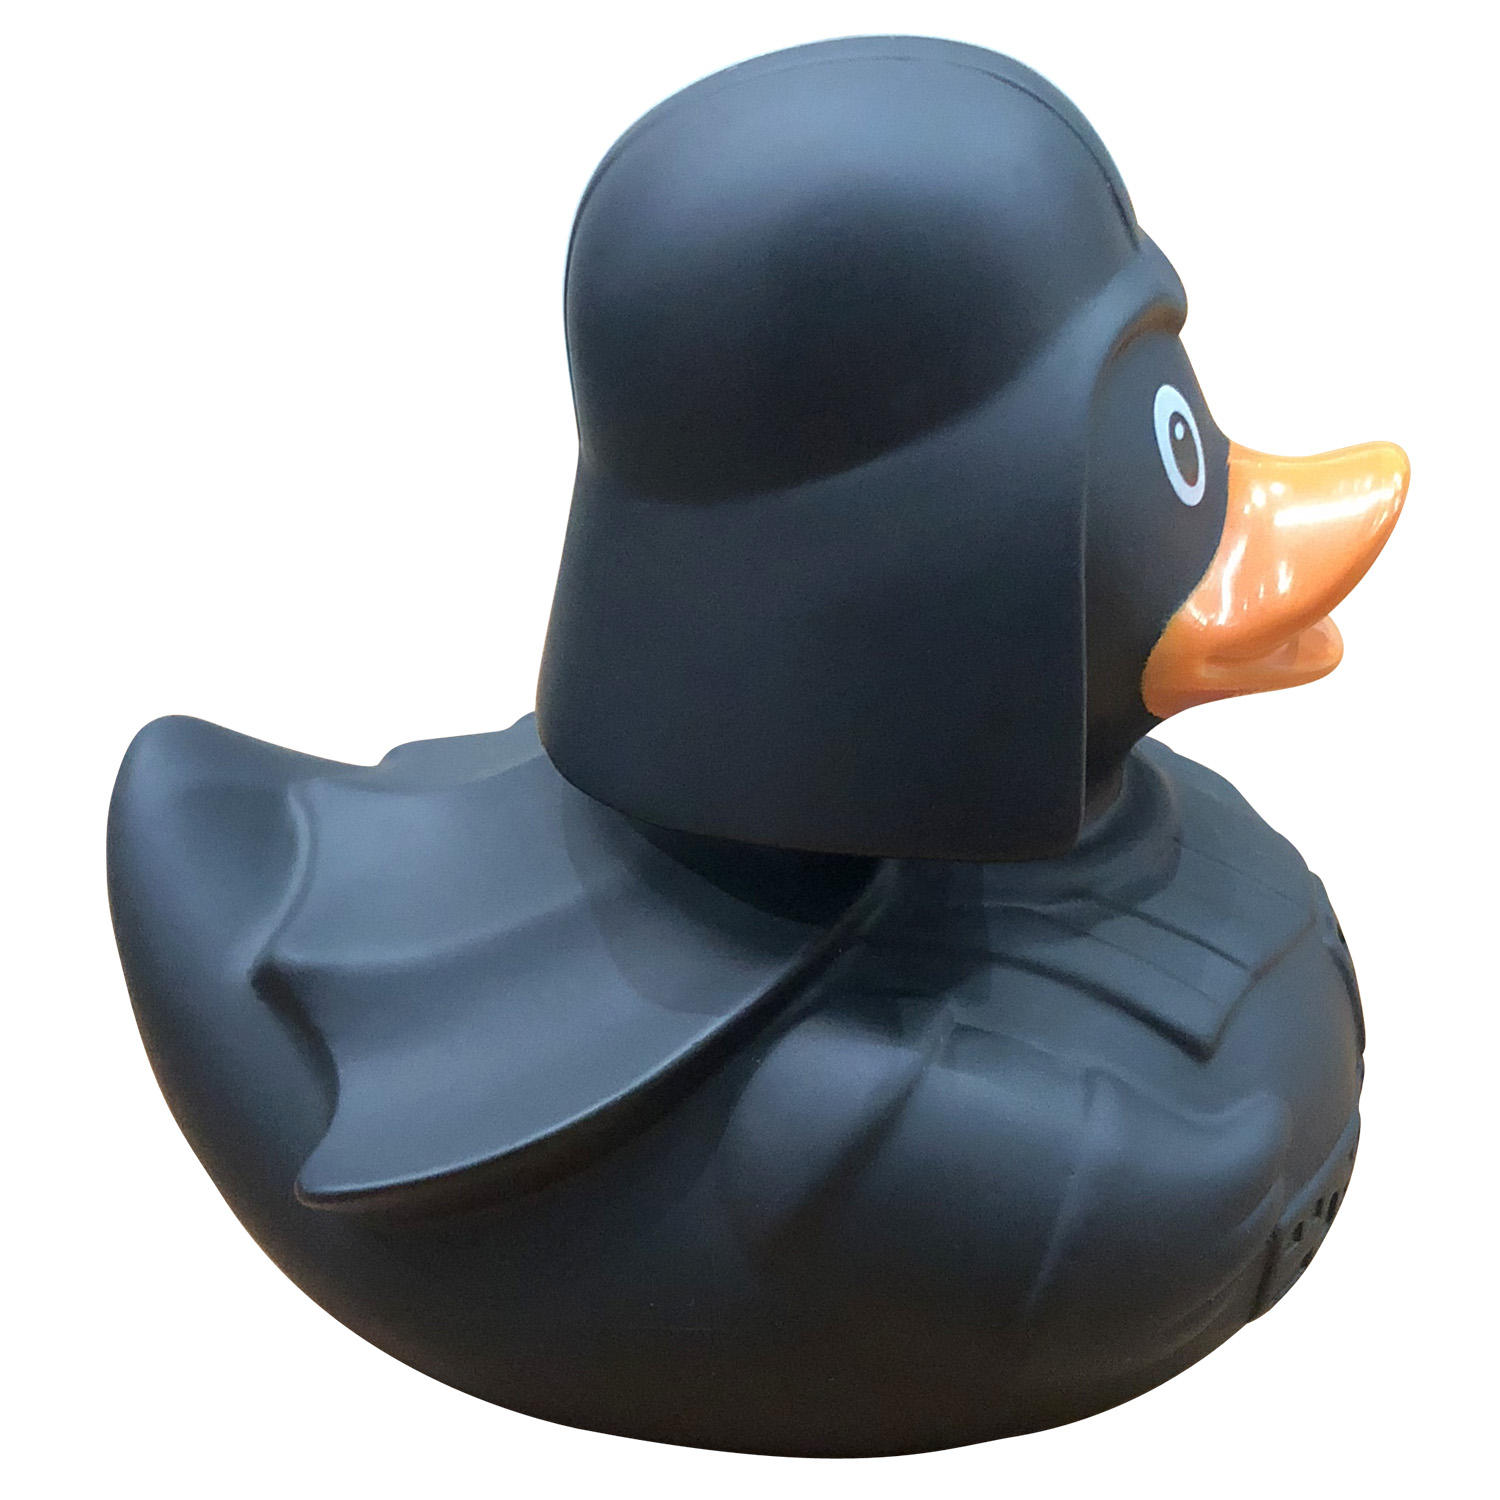 Игрушка Funny Funny ducks для ванной Темный Лорд уточка 2074 - фото 3